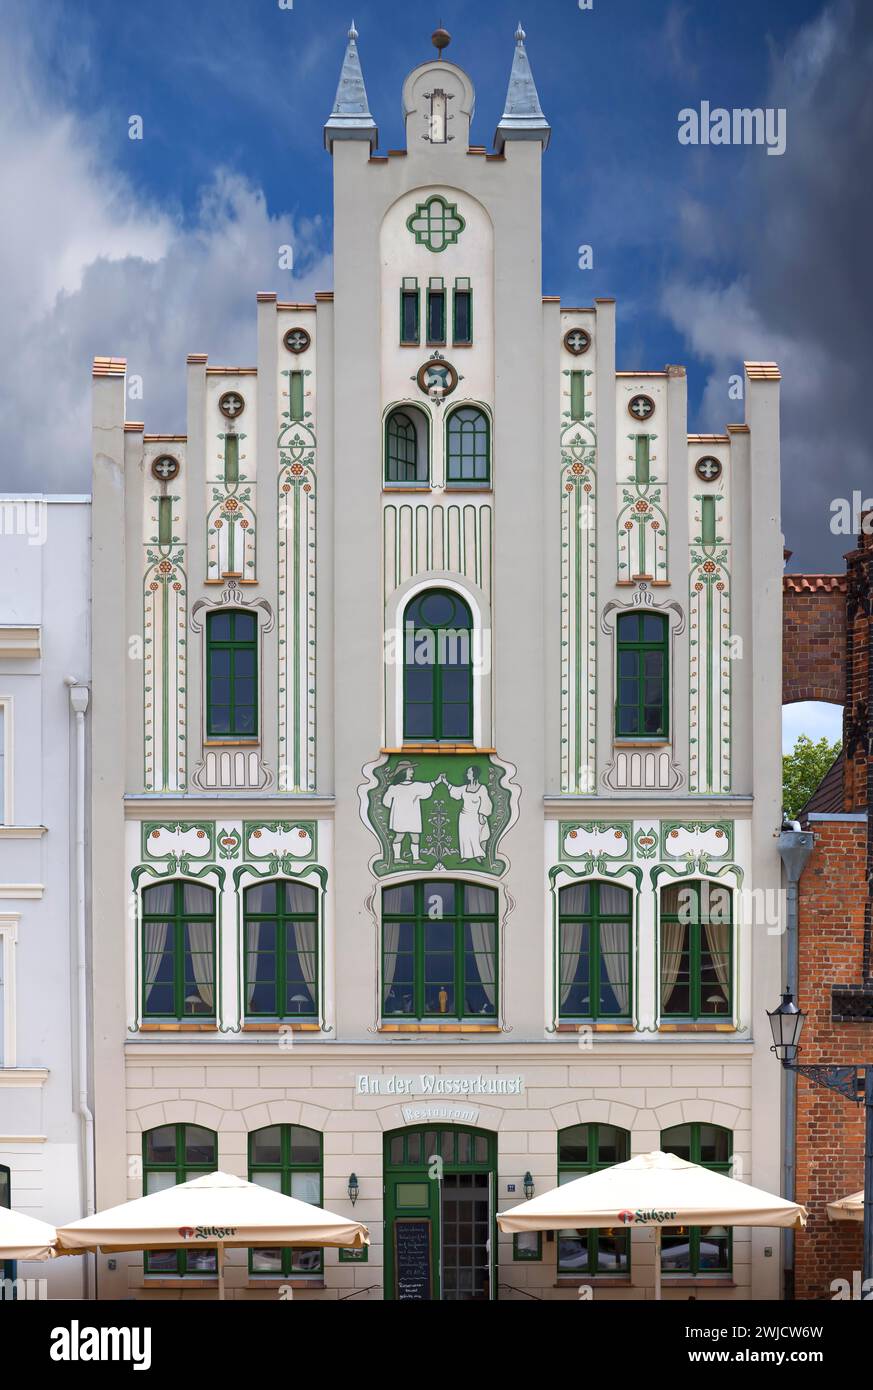 Maison peinte dans un style Art Nouveau, construite vers 1900, aujourd'hui Restaurant an der Wasserkunst, Am Markt 22, Wismar, Mecklembourg-Poméranie occidentale, Allemagne Banque D'Images